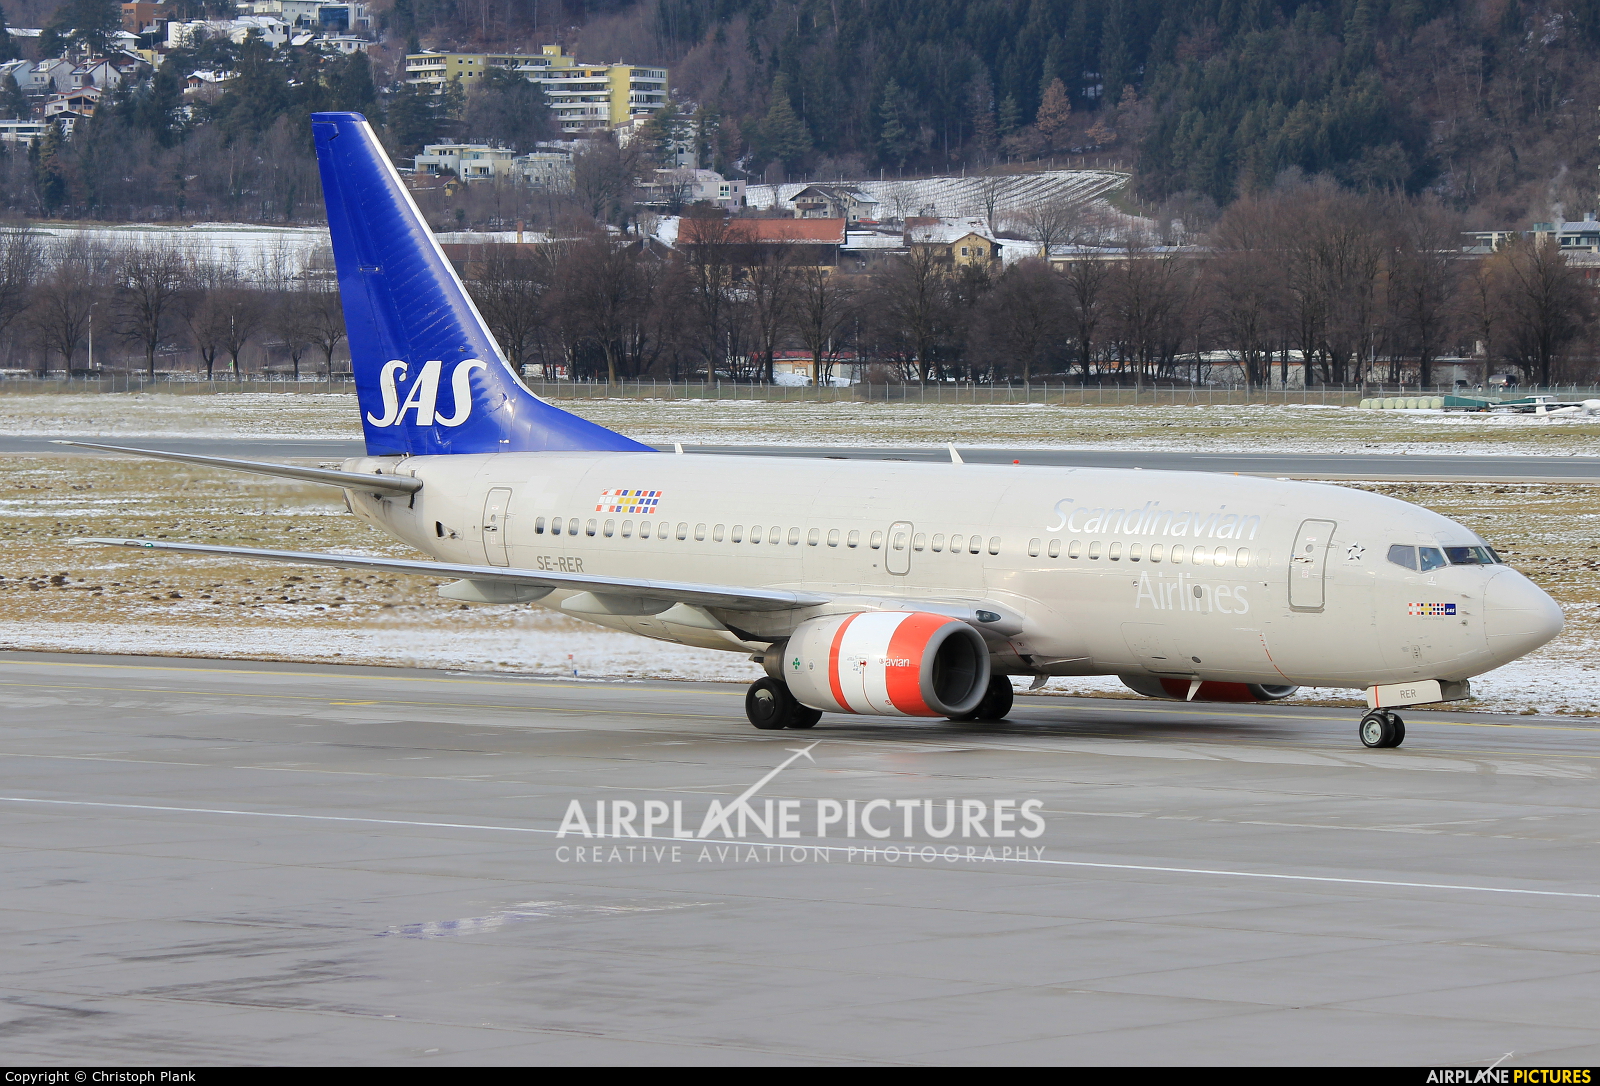 SAS - Scandinavian Airlines SE-RER aircraft at Innsbruck